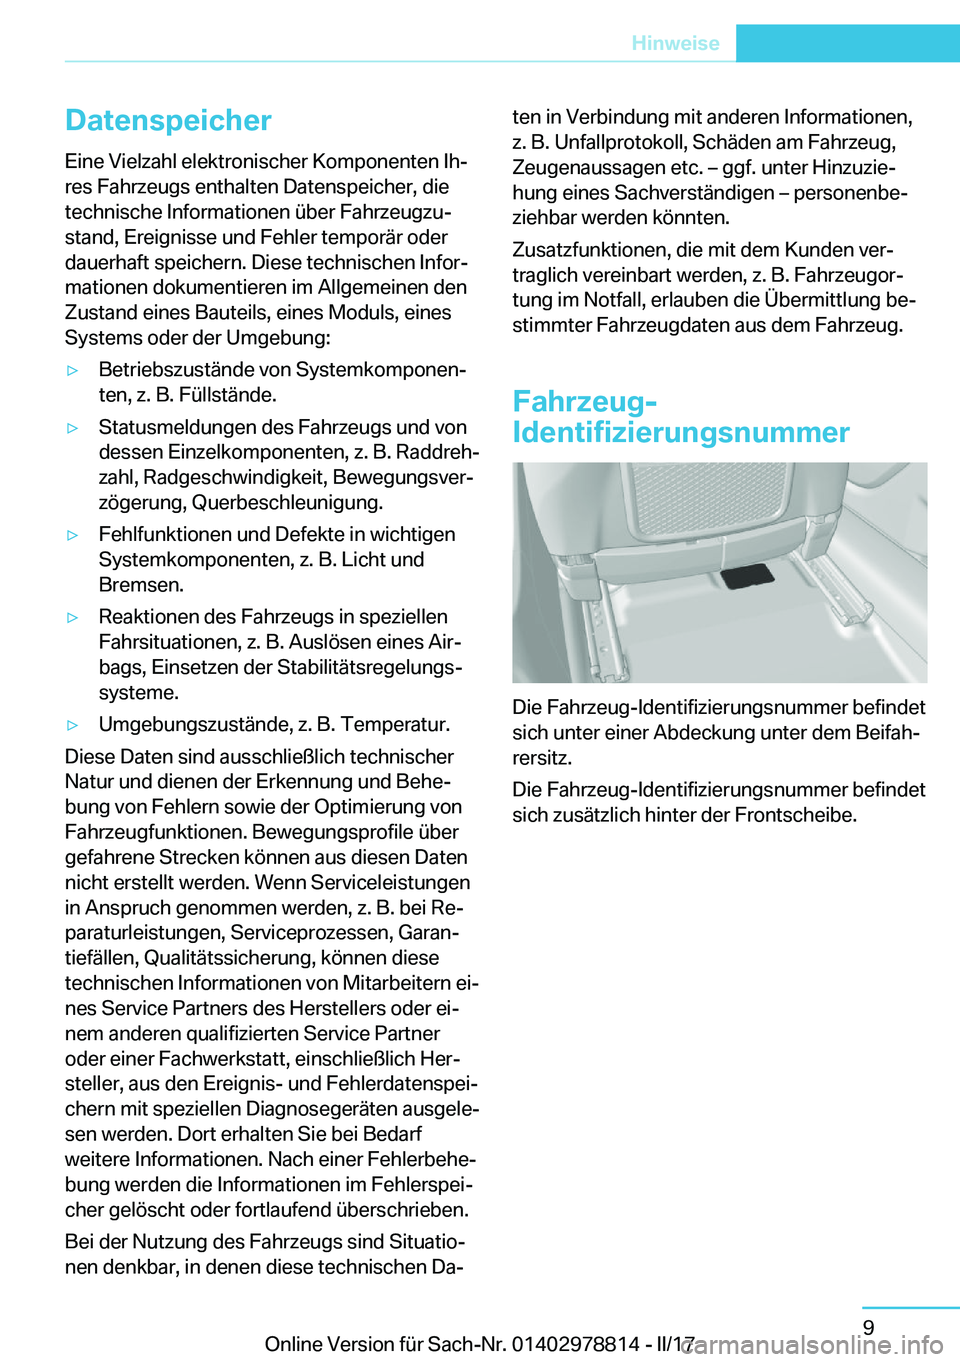 BMW I3 2017  Betriebsanleitungen (in German) �D�a�t�e�n�s�p�e�i�c�h�e�r
�E�i�n�e� �V�i�e�l�z�a�h�l� �e�l�e�k�t�r�o�n�i�s�c�h�e�r� �K�o�m�p�o�n�e�n�t�e�n� �I�hj
�r�e�s� �F�a�h�r�z�e�u�g�s� �e�n�t�h�a�l�t�e�n� �D�a�t�e�n�s�p�e�i�c�h�e�r�,� �d�i�e